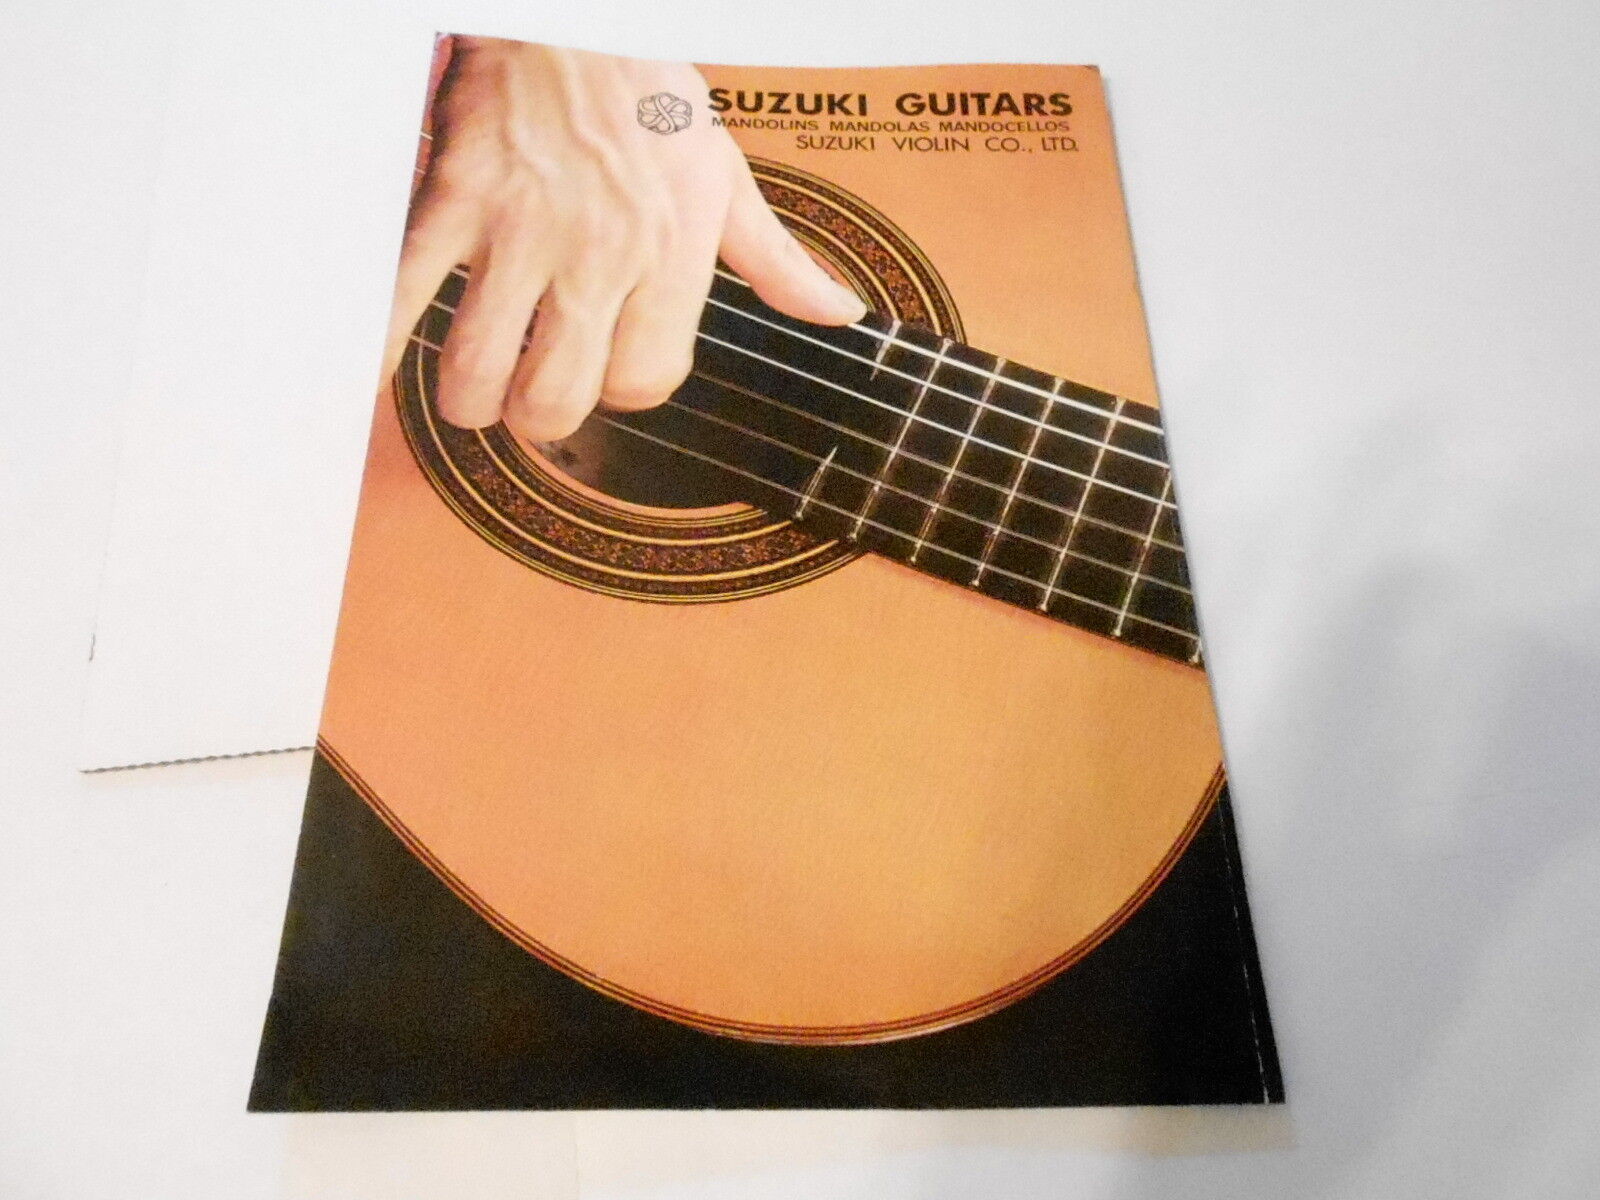 VINTAGE MUSICAL INSTRUMENT CATALOG #10103 -1970s SUZUKI GUITARS